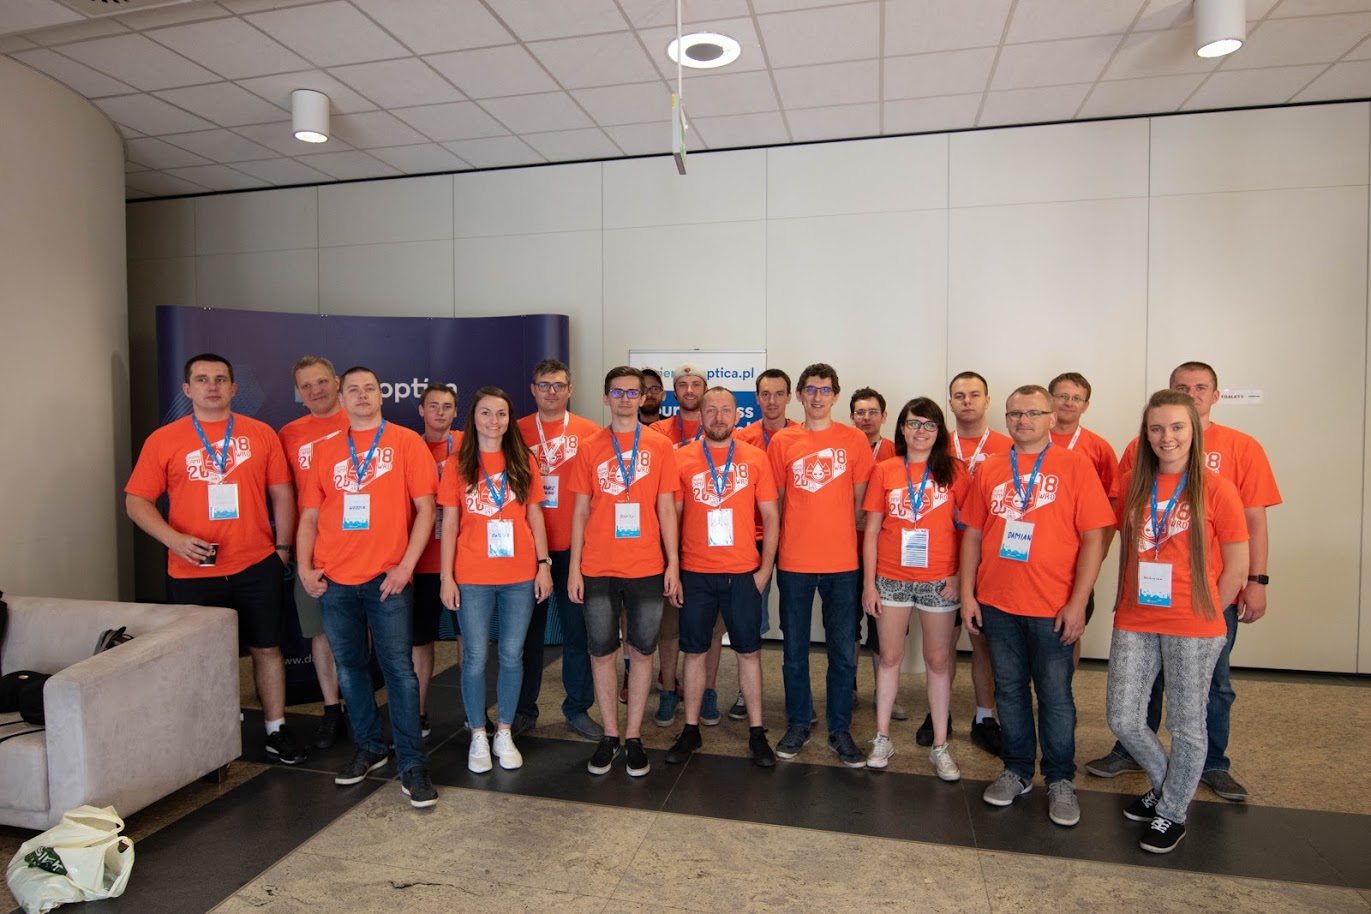 Organizatorzy konferencji w charakterystycznych pomarańczowych koszulkach